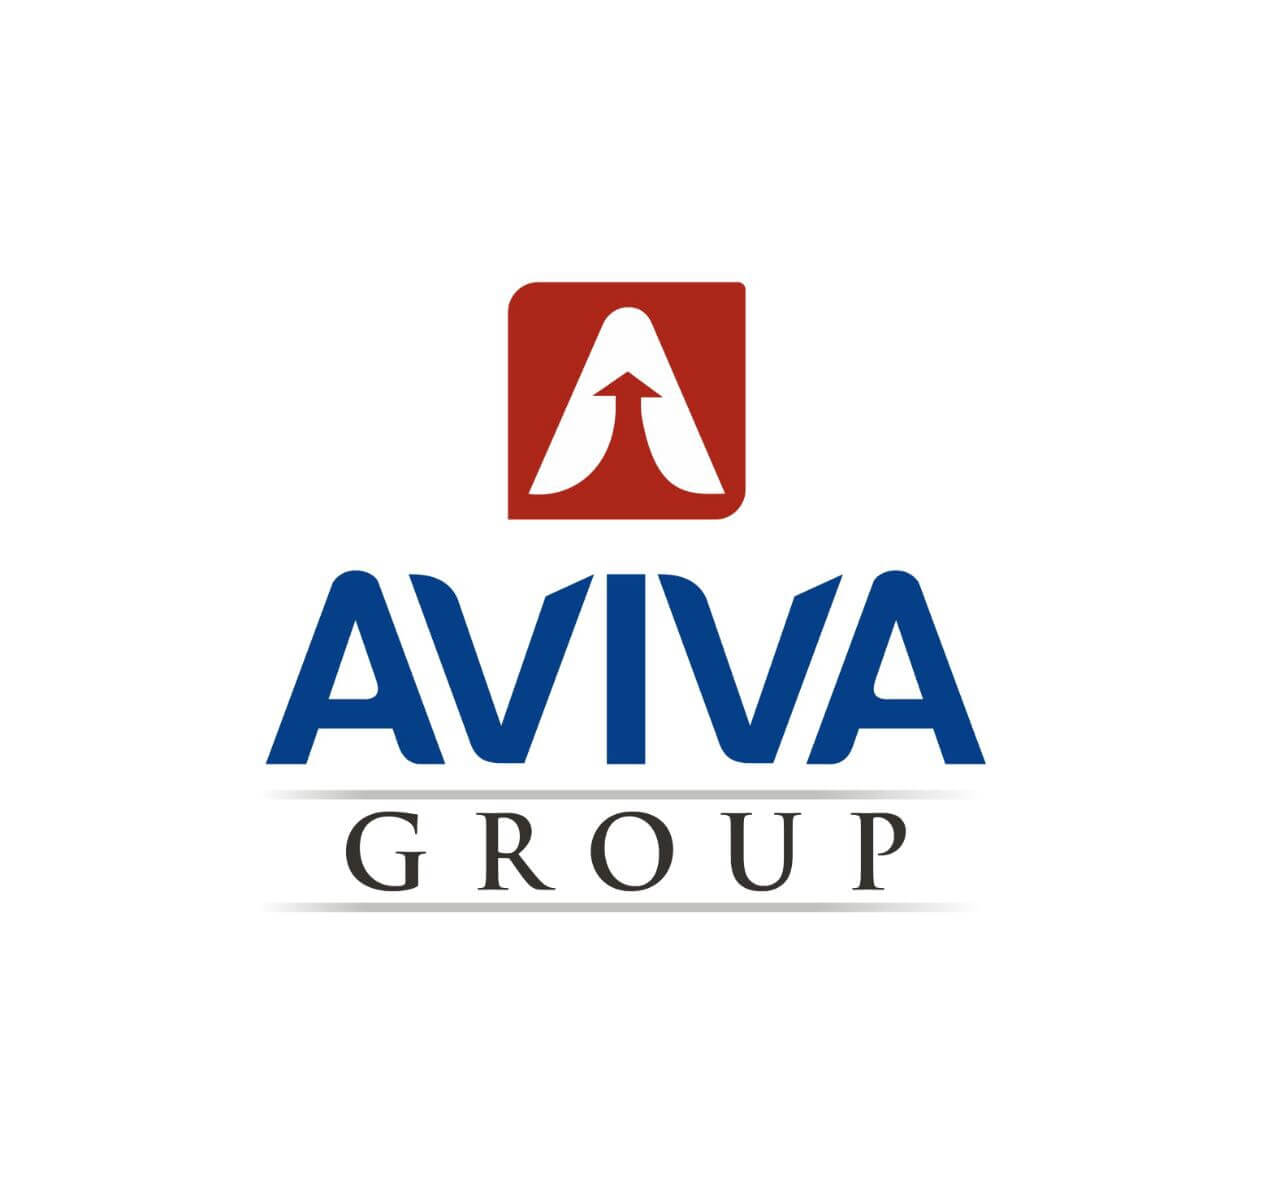 Aviva Group